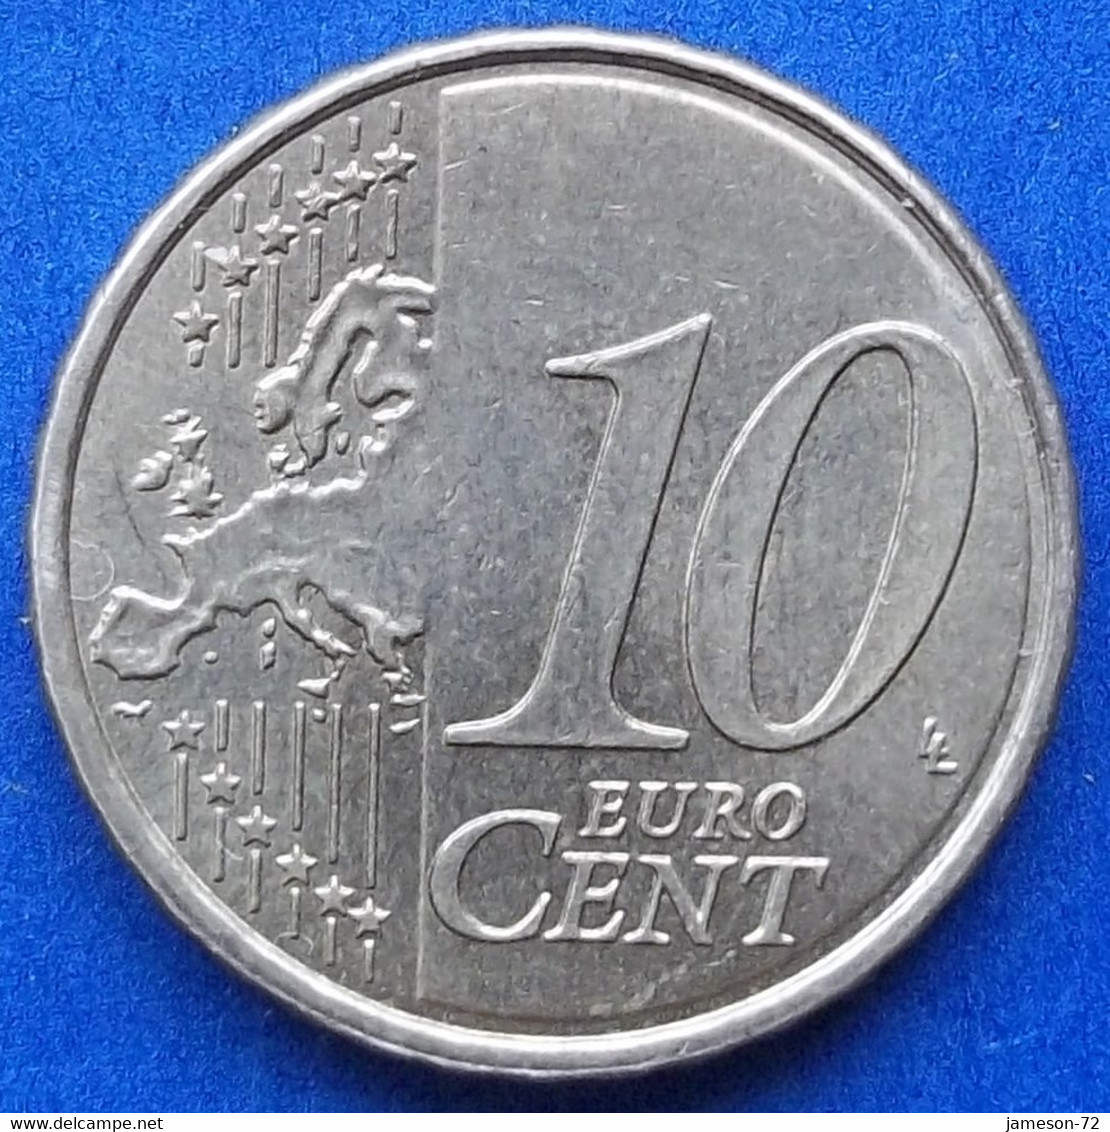 ANDORRA - 10 Euro Cents 2019 "Santa Coloma" KM# 523 - Edelweiss Coins - Andorra